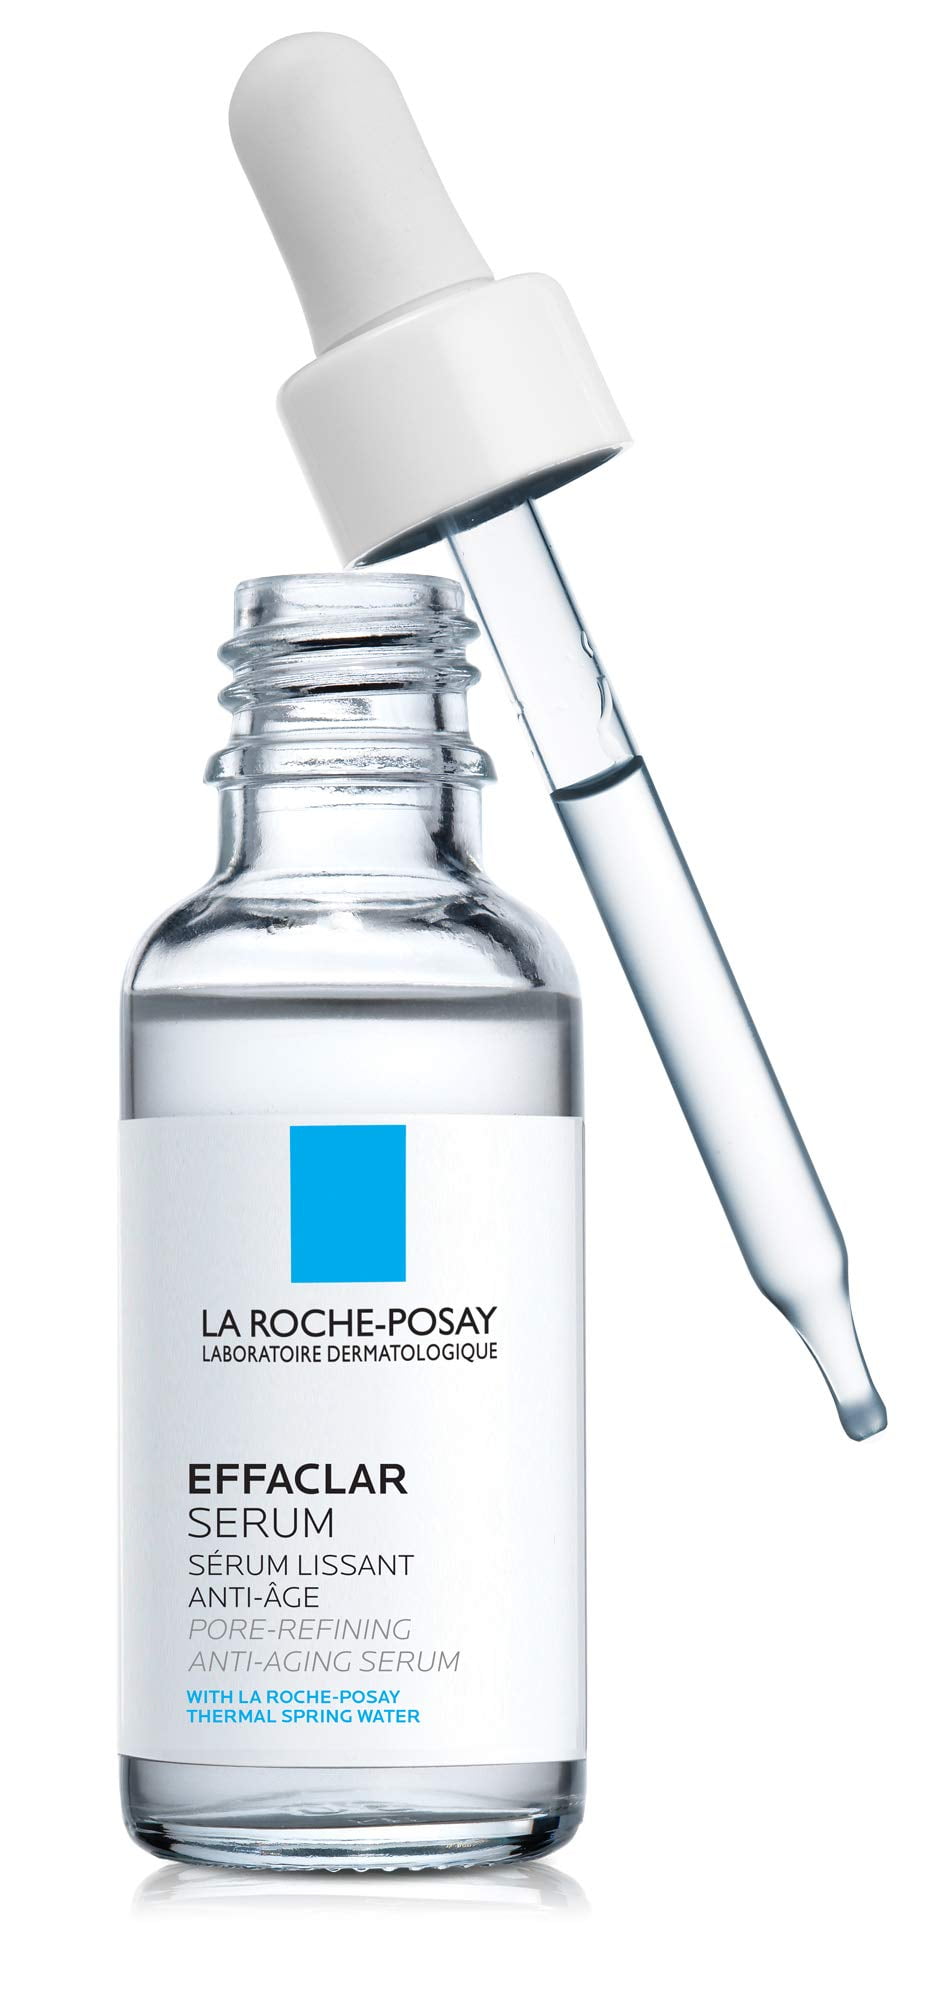 La Roche-Posay: az érzékeny bőr szakértője